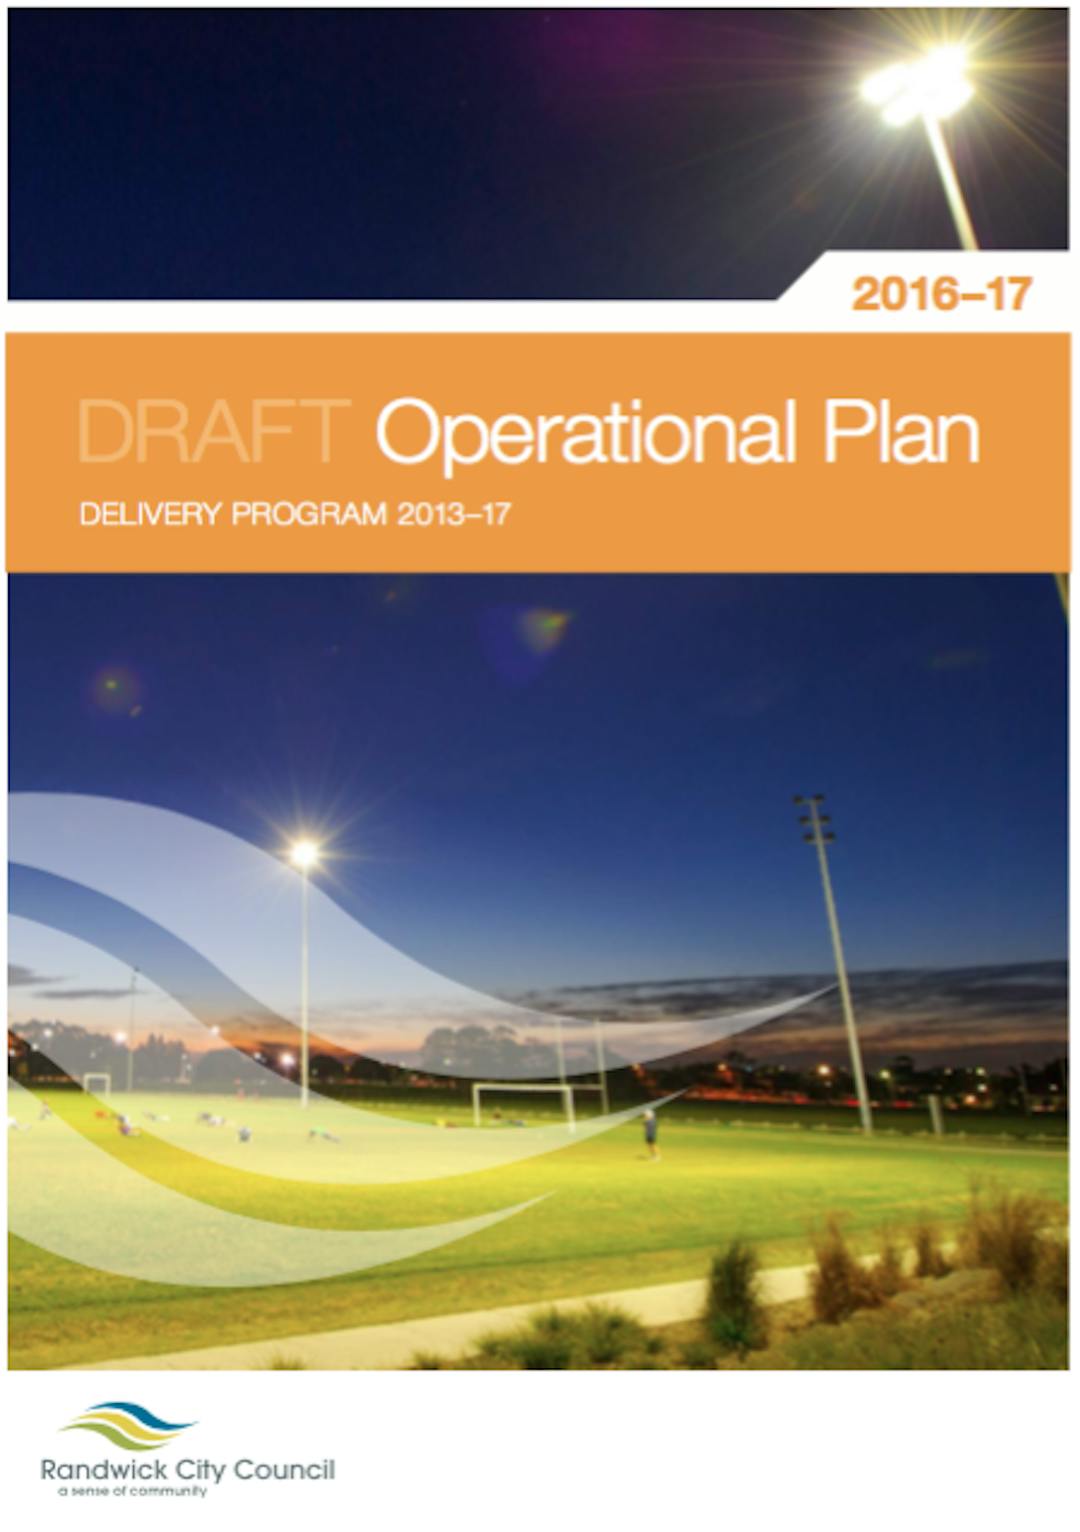 Draft Operational Plan 2016-17